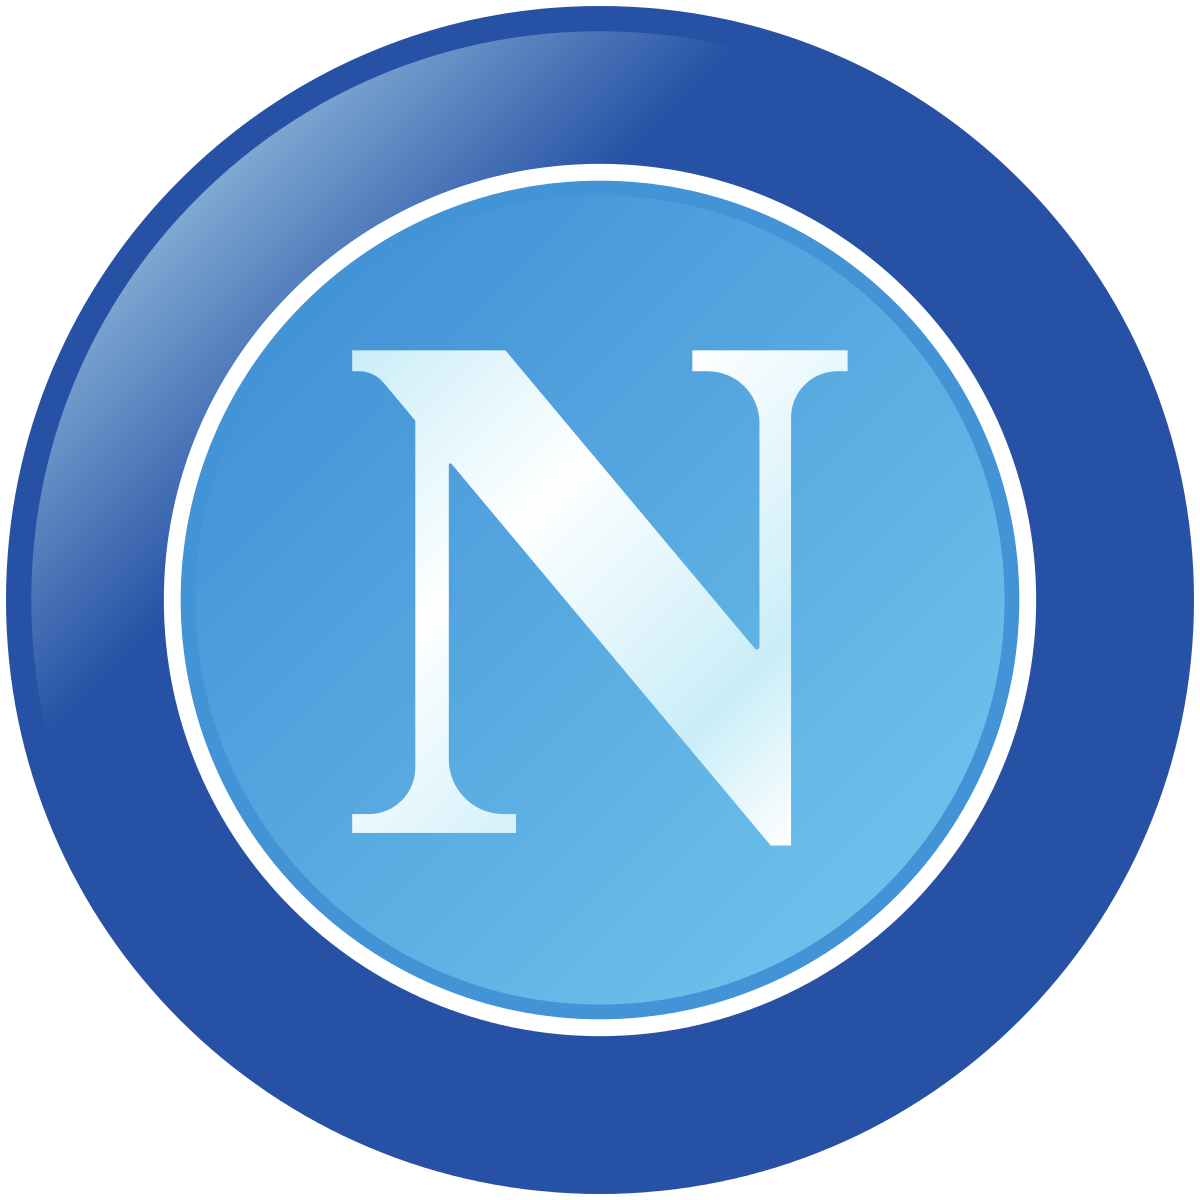 Napoli Camiseta | Camiseta Napoli replica 2021 2022